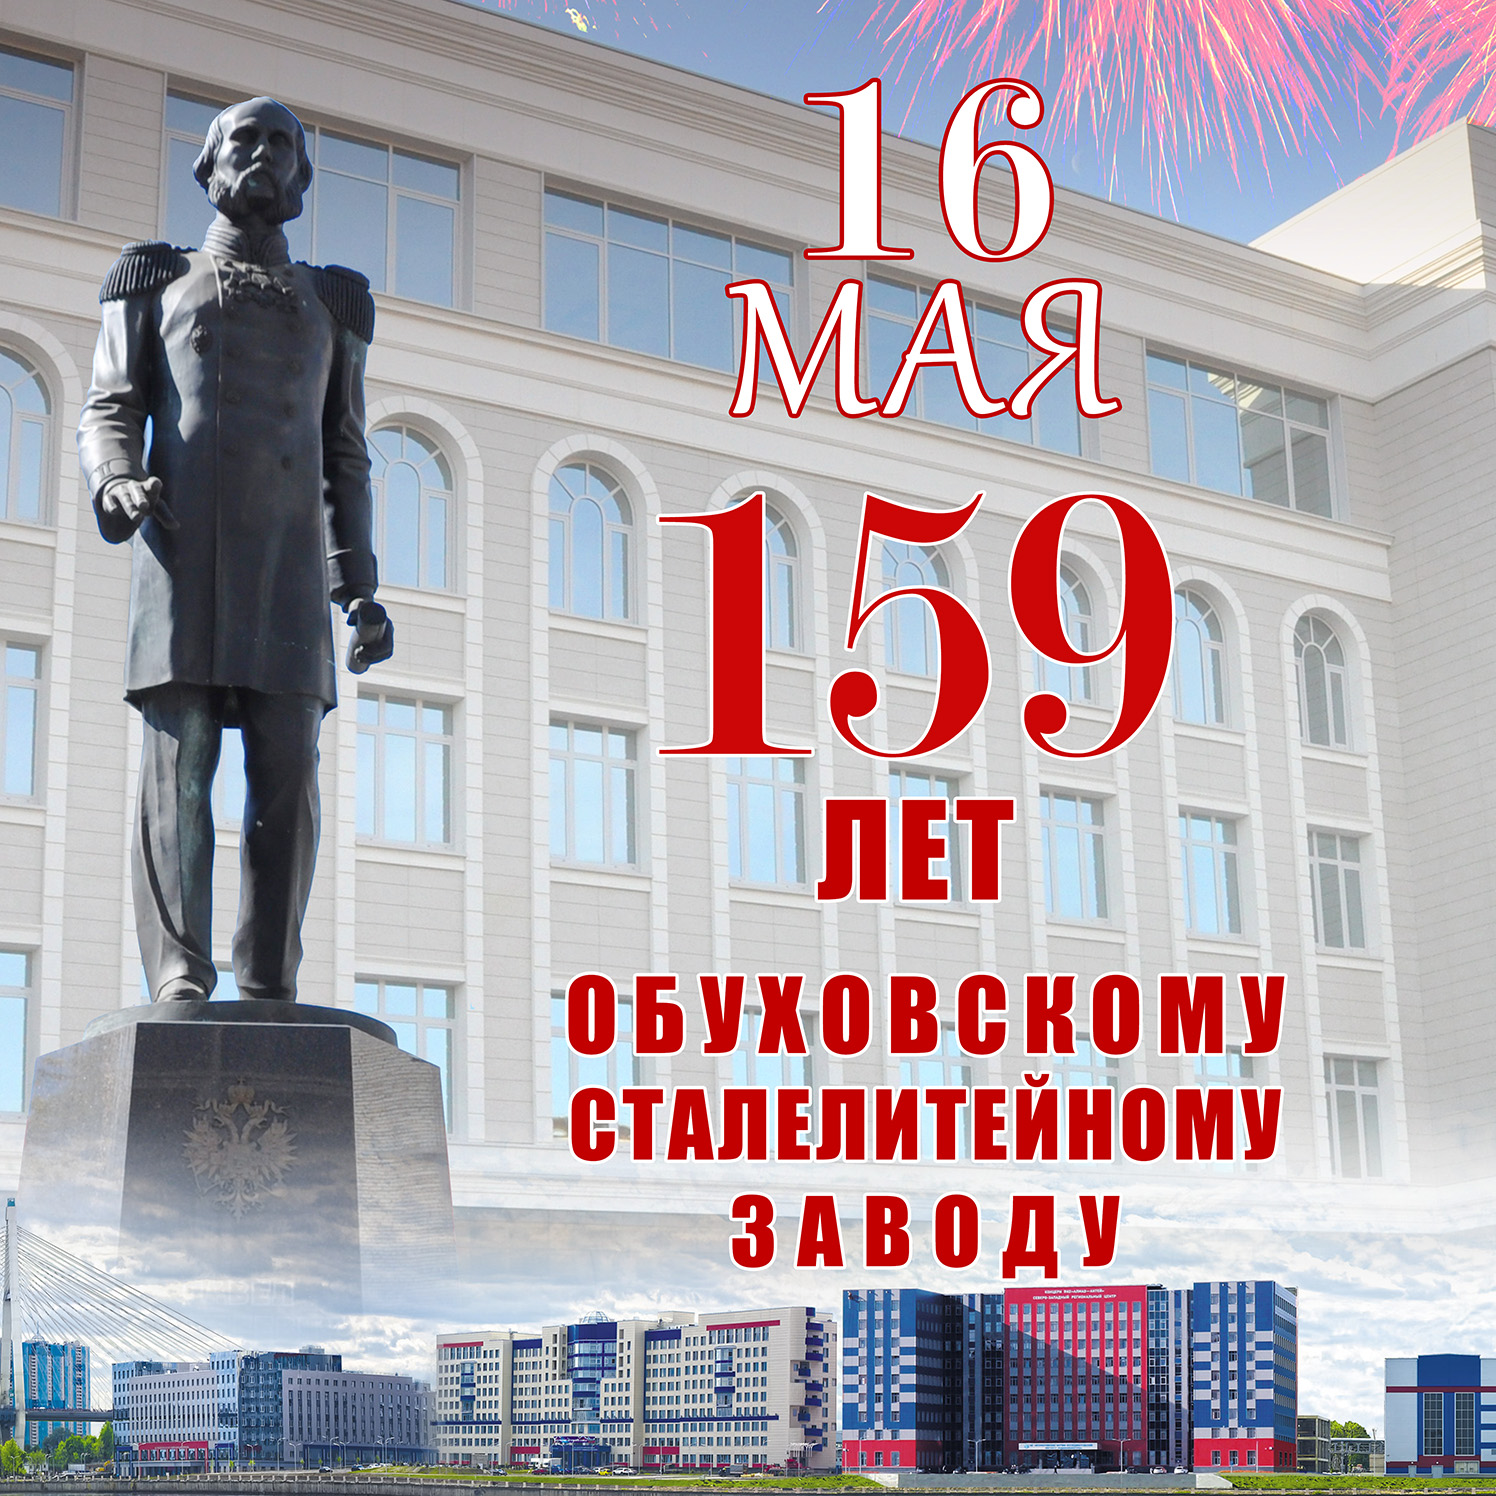 Обуховскому заводу исполнилось 159 лет